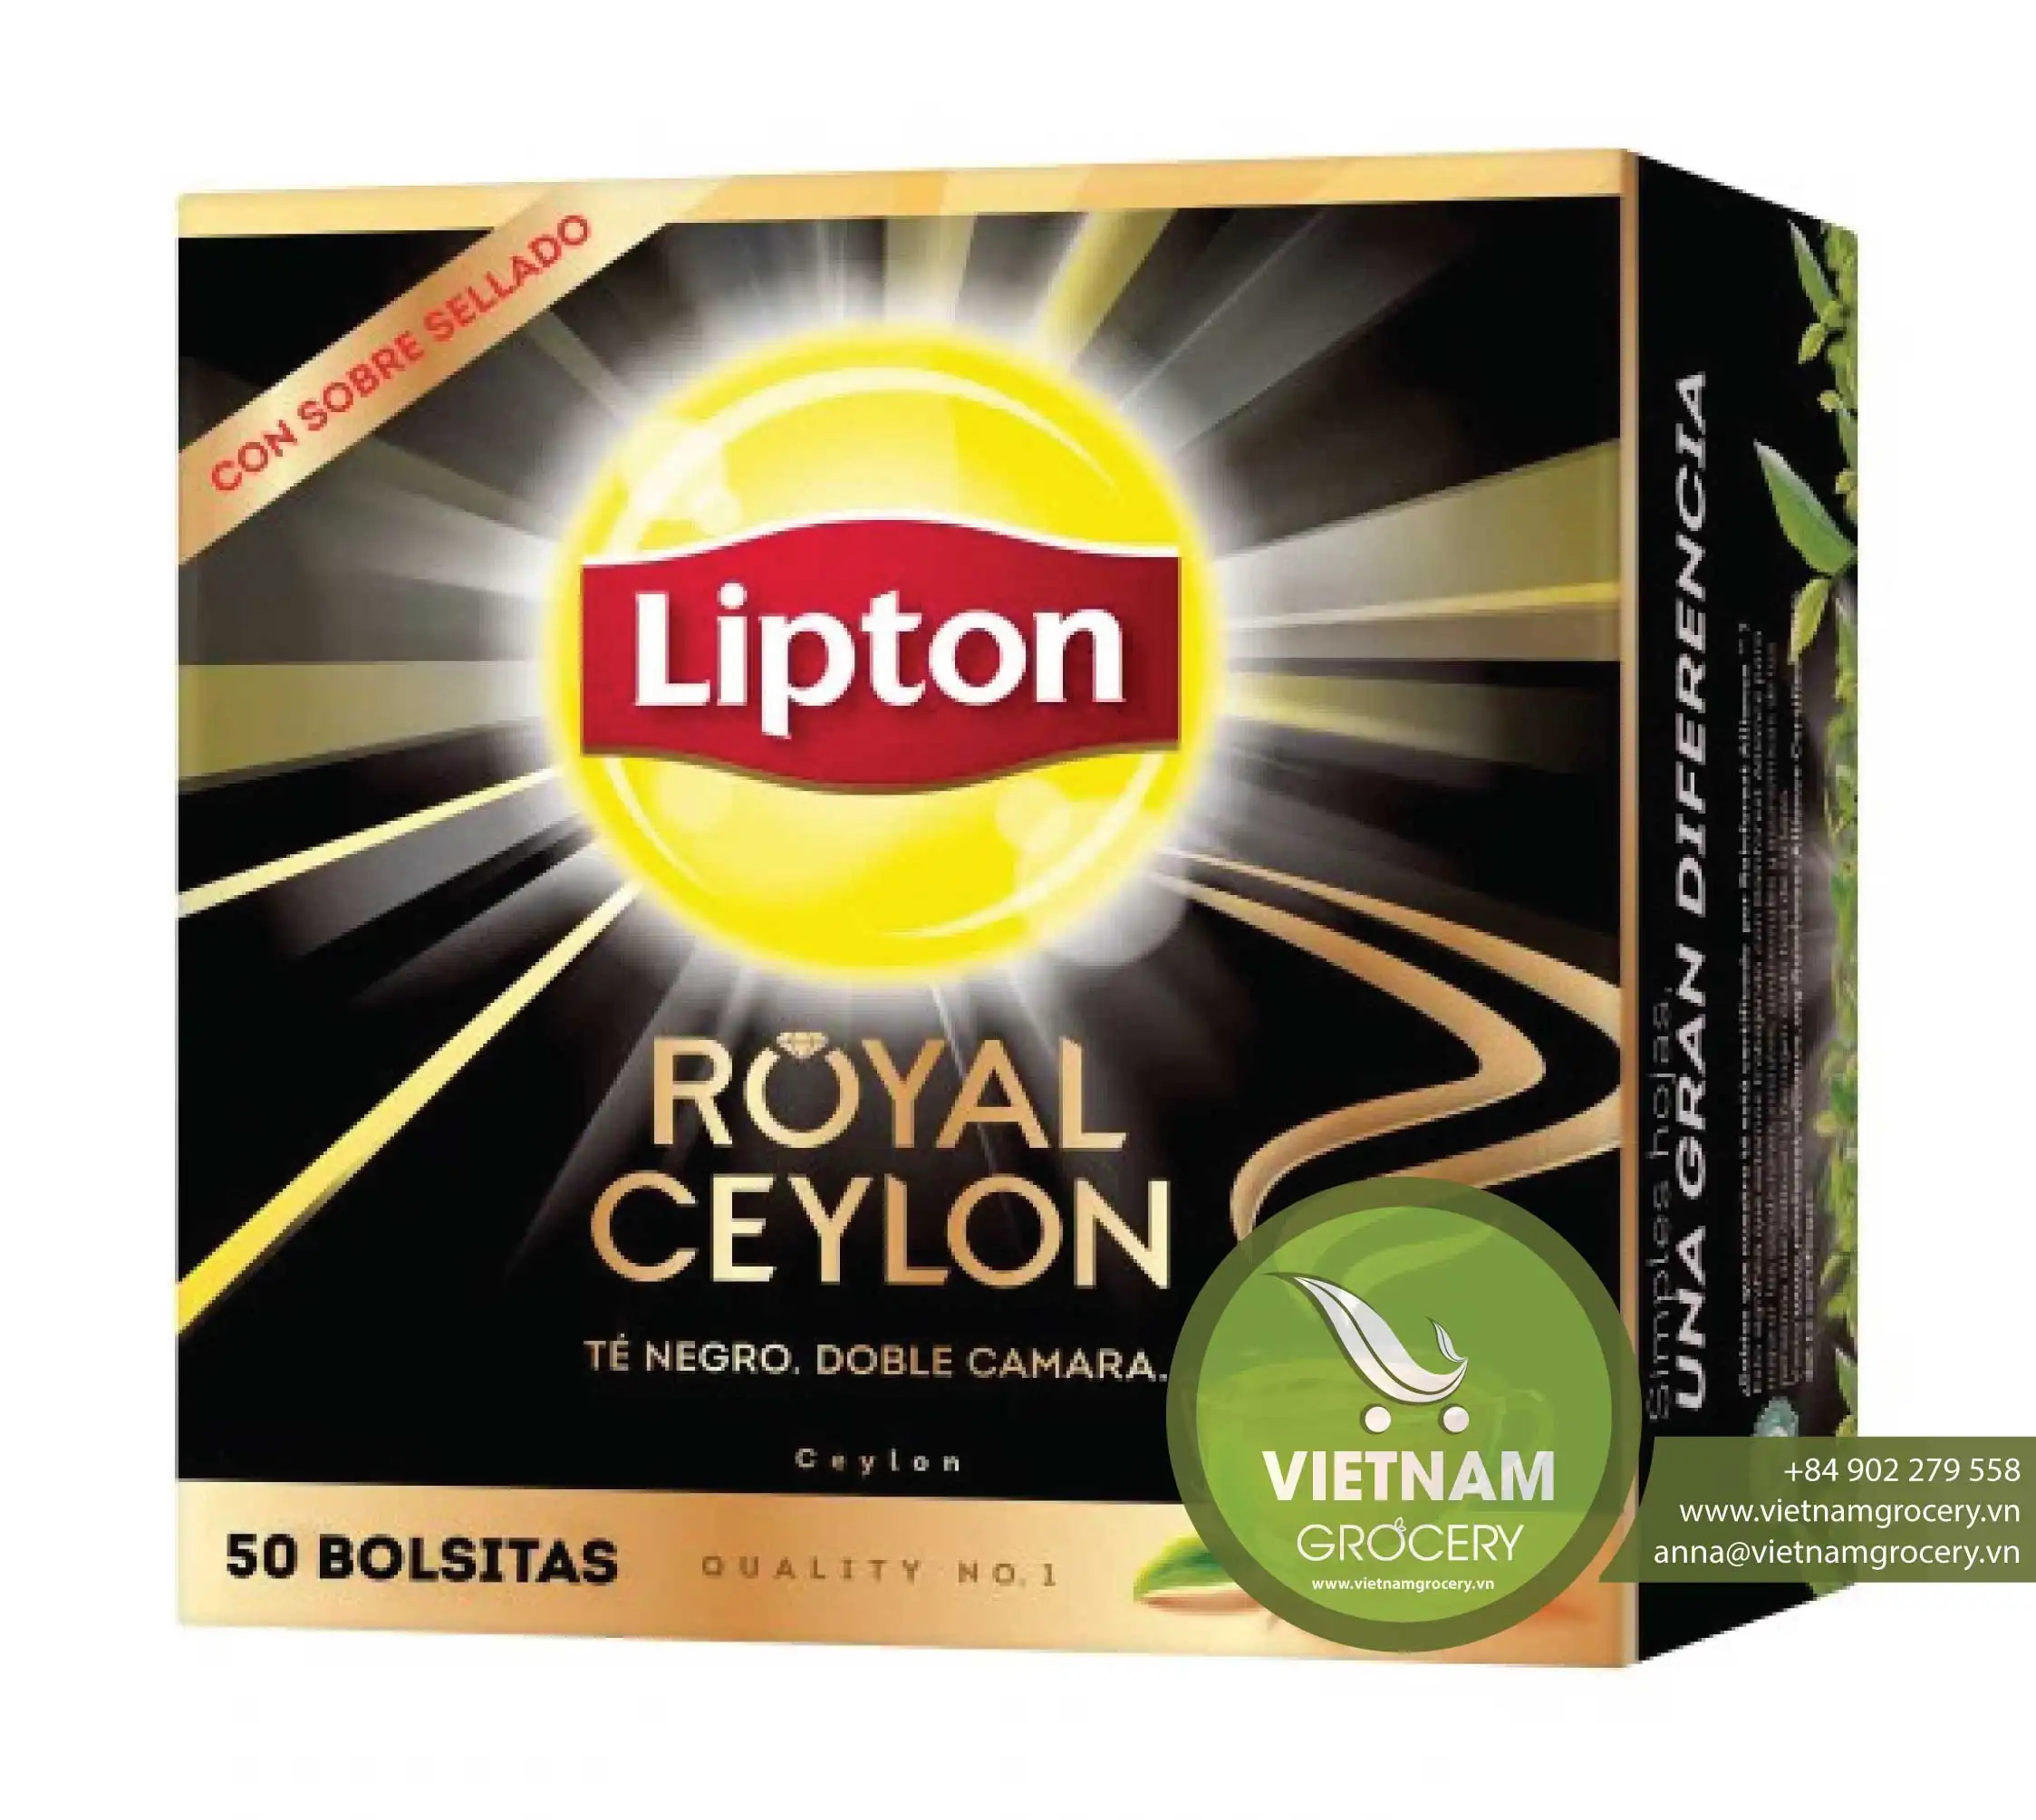 लिप्टन रॉयल सीलोन काली चाय